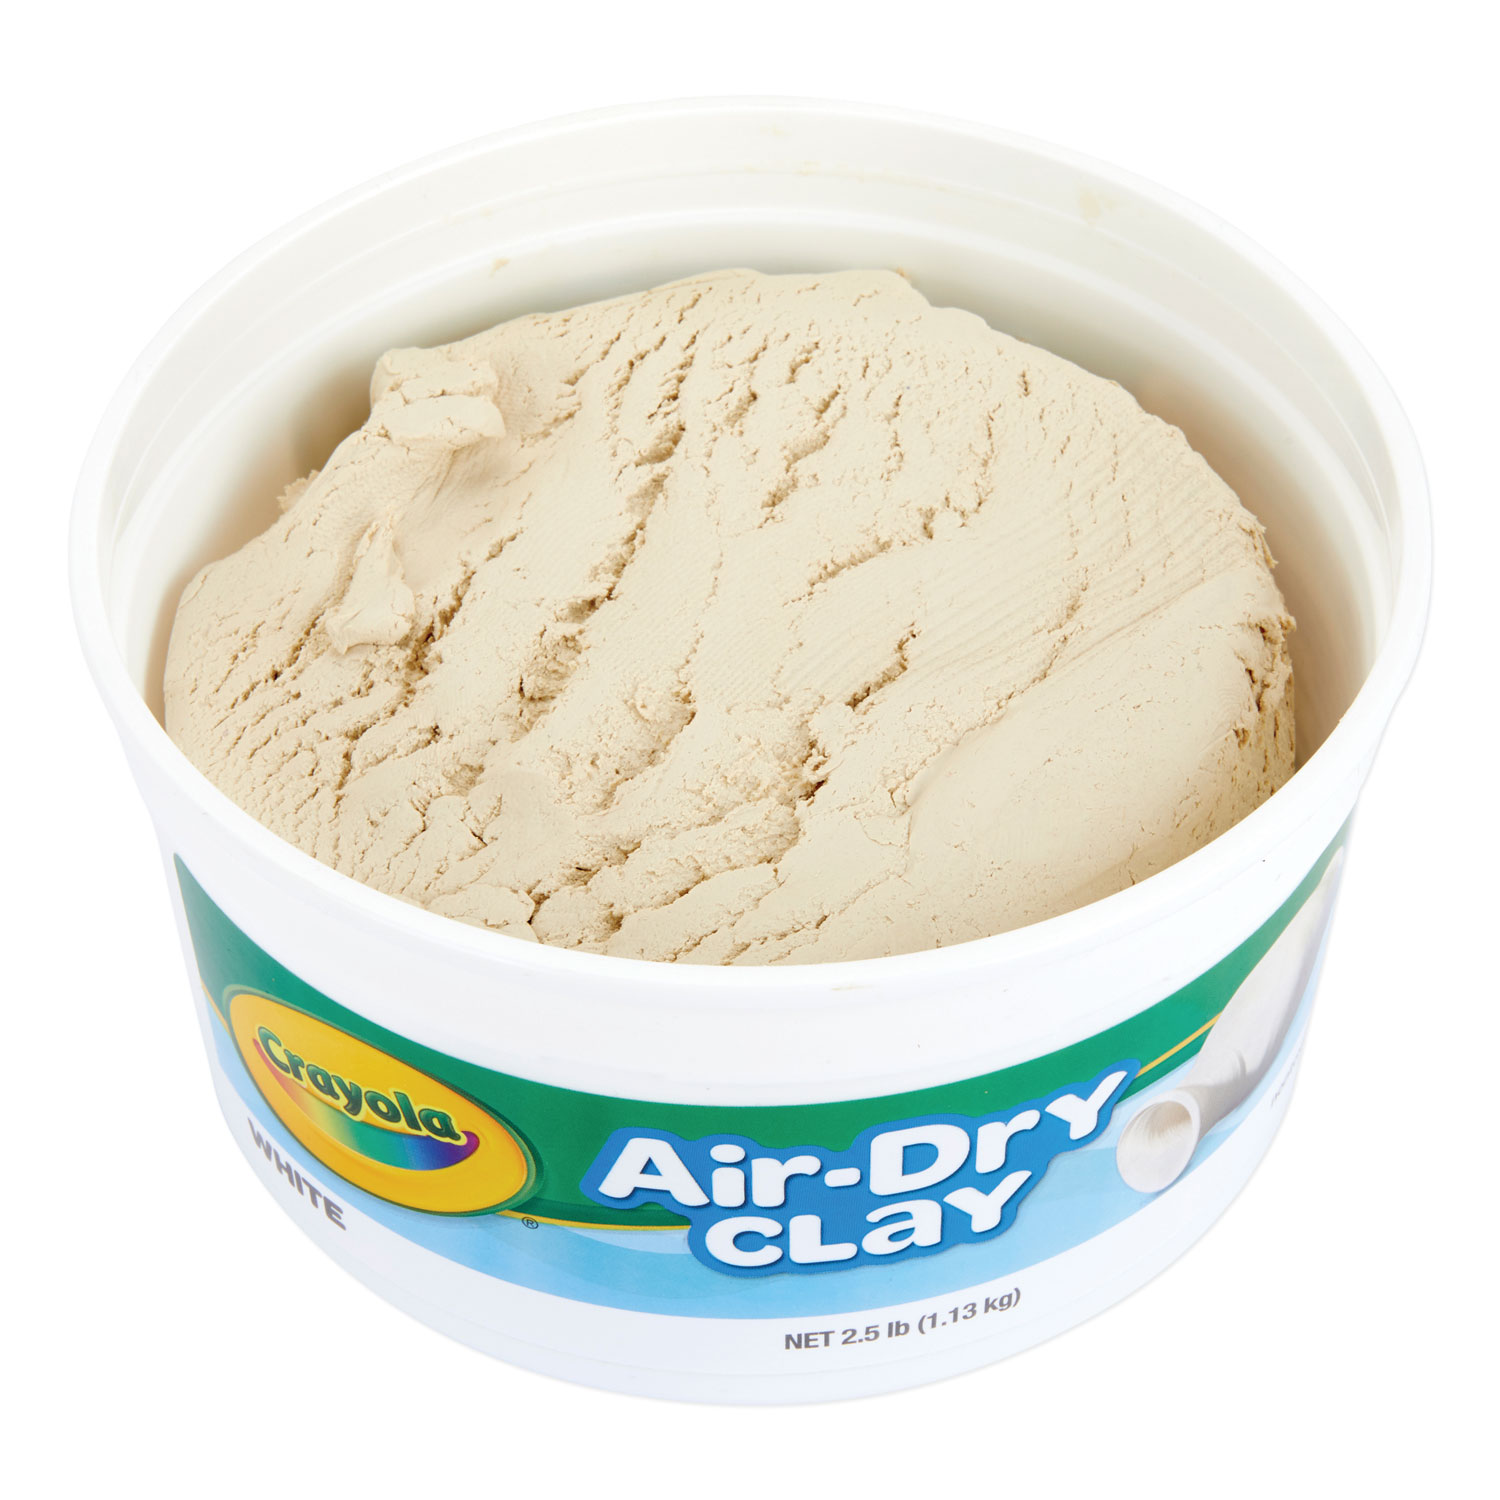 Air-Dry Clay, White, 5 lbs